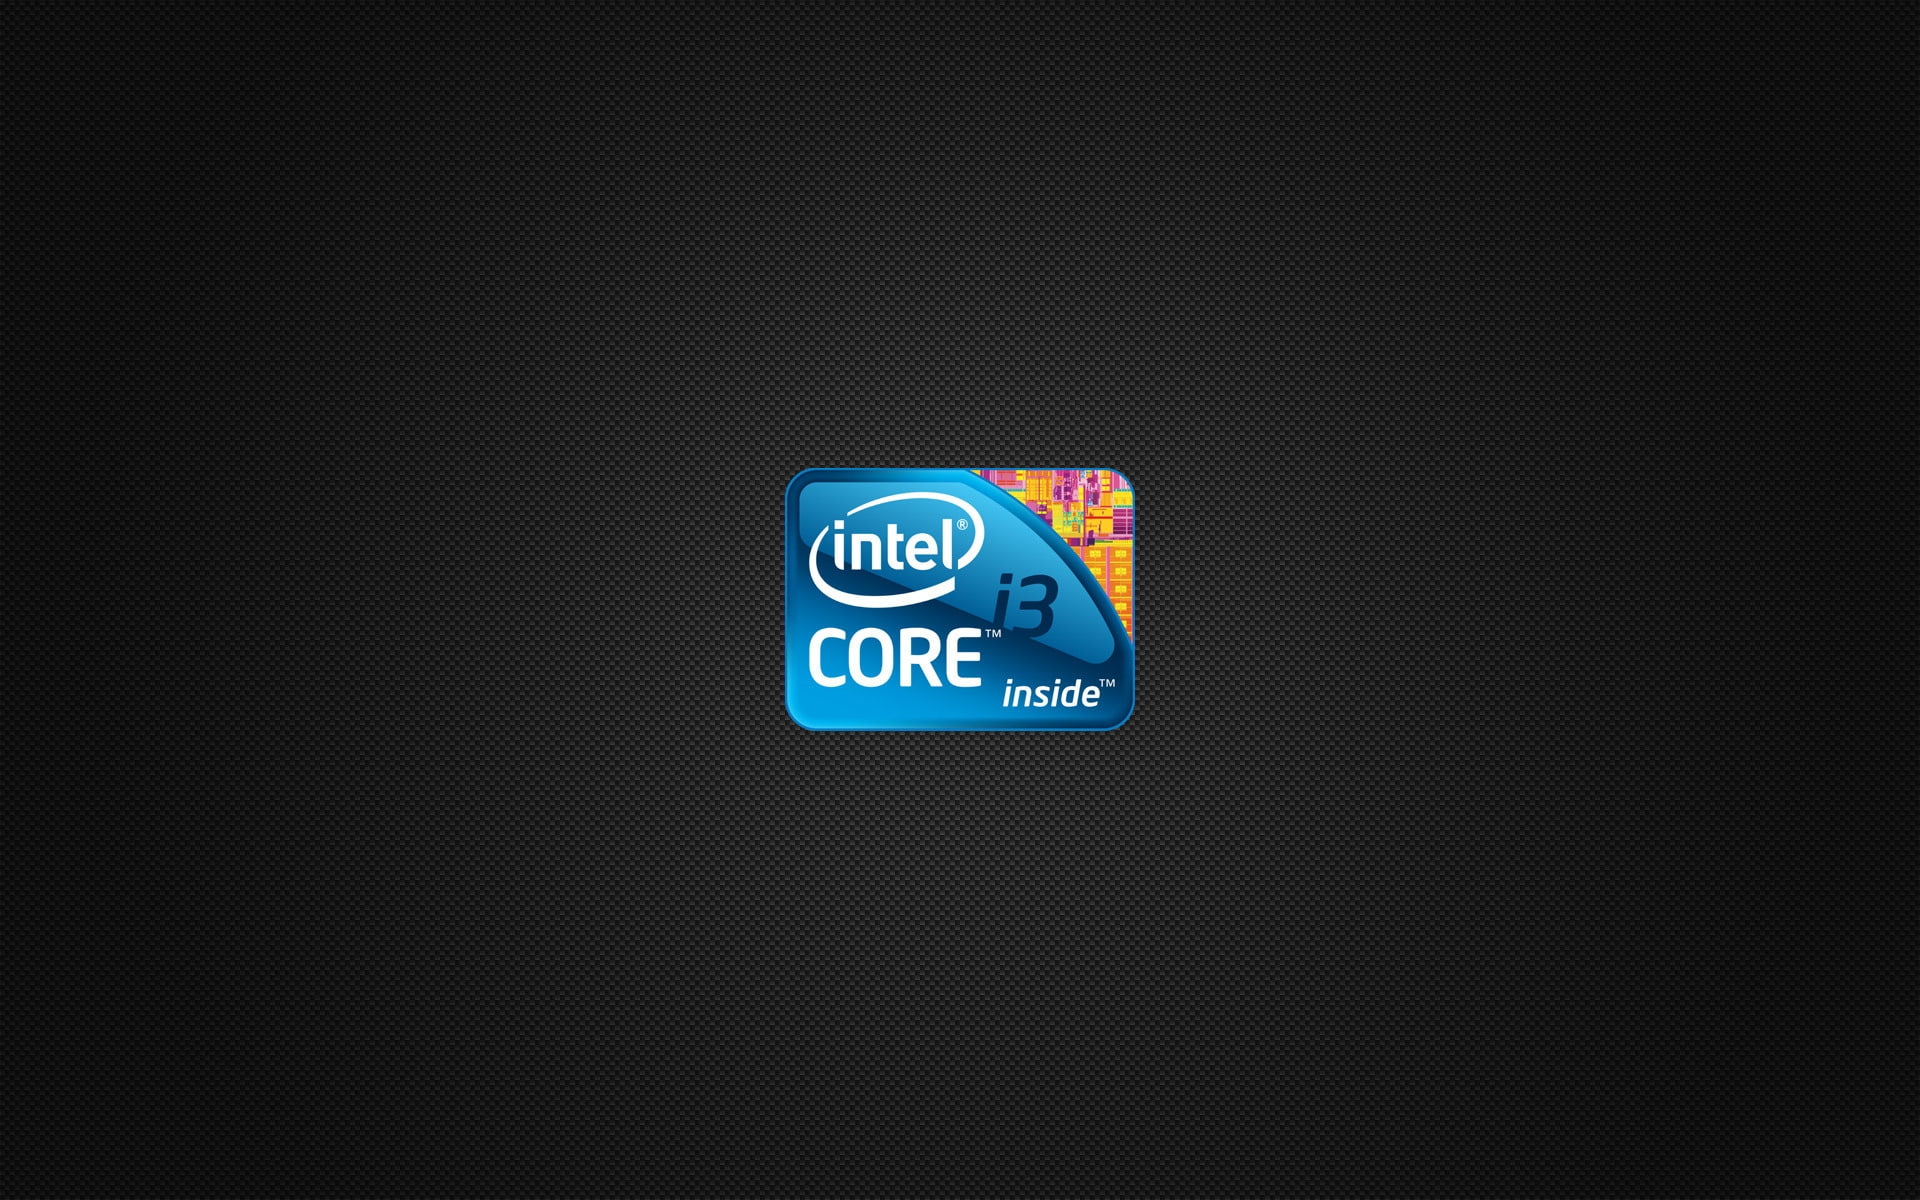 Intel Core I 3, logo, background